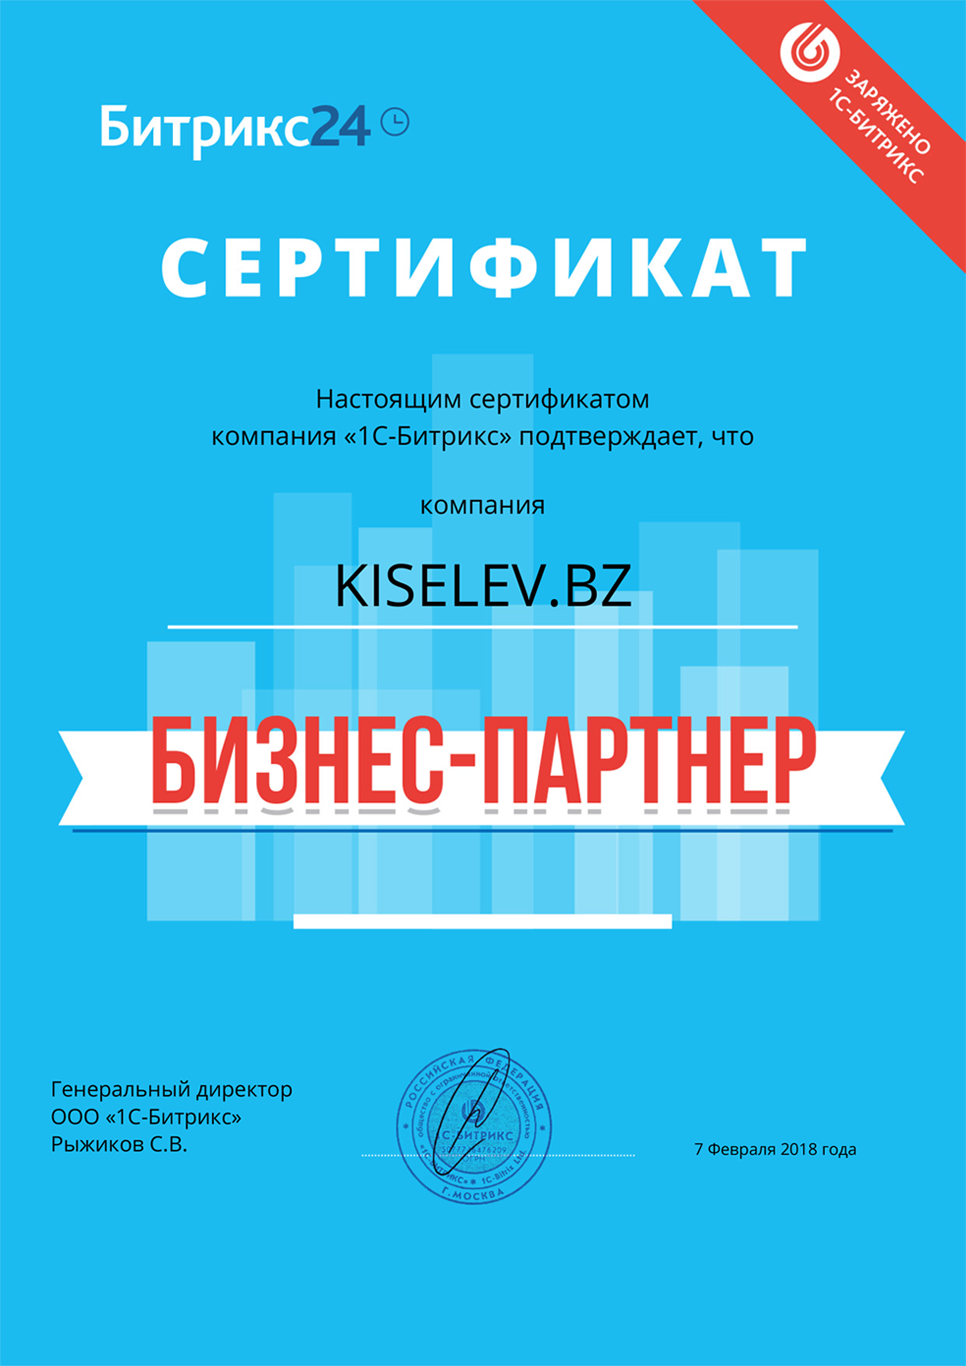 Сертификат партнёра по АМОСРМ в Юрьеве-Польском